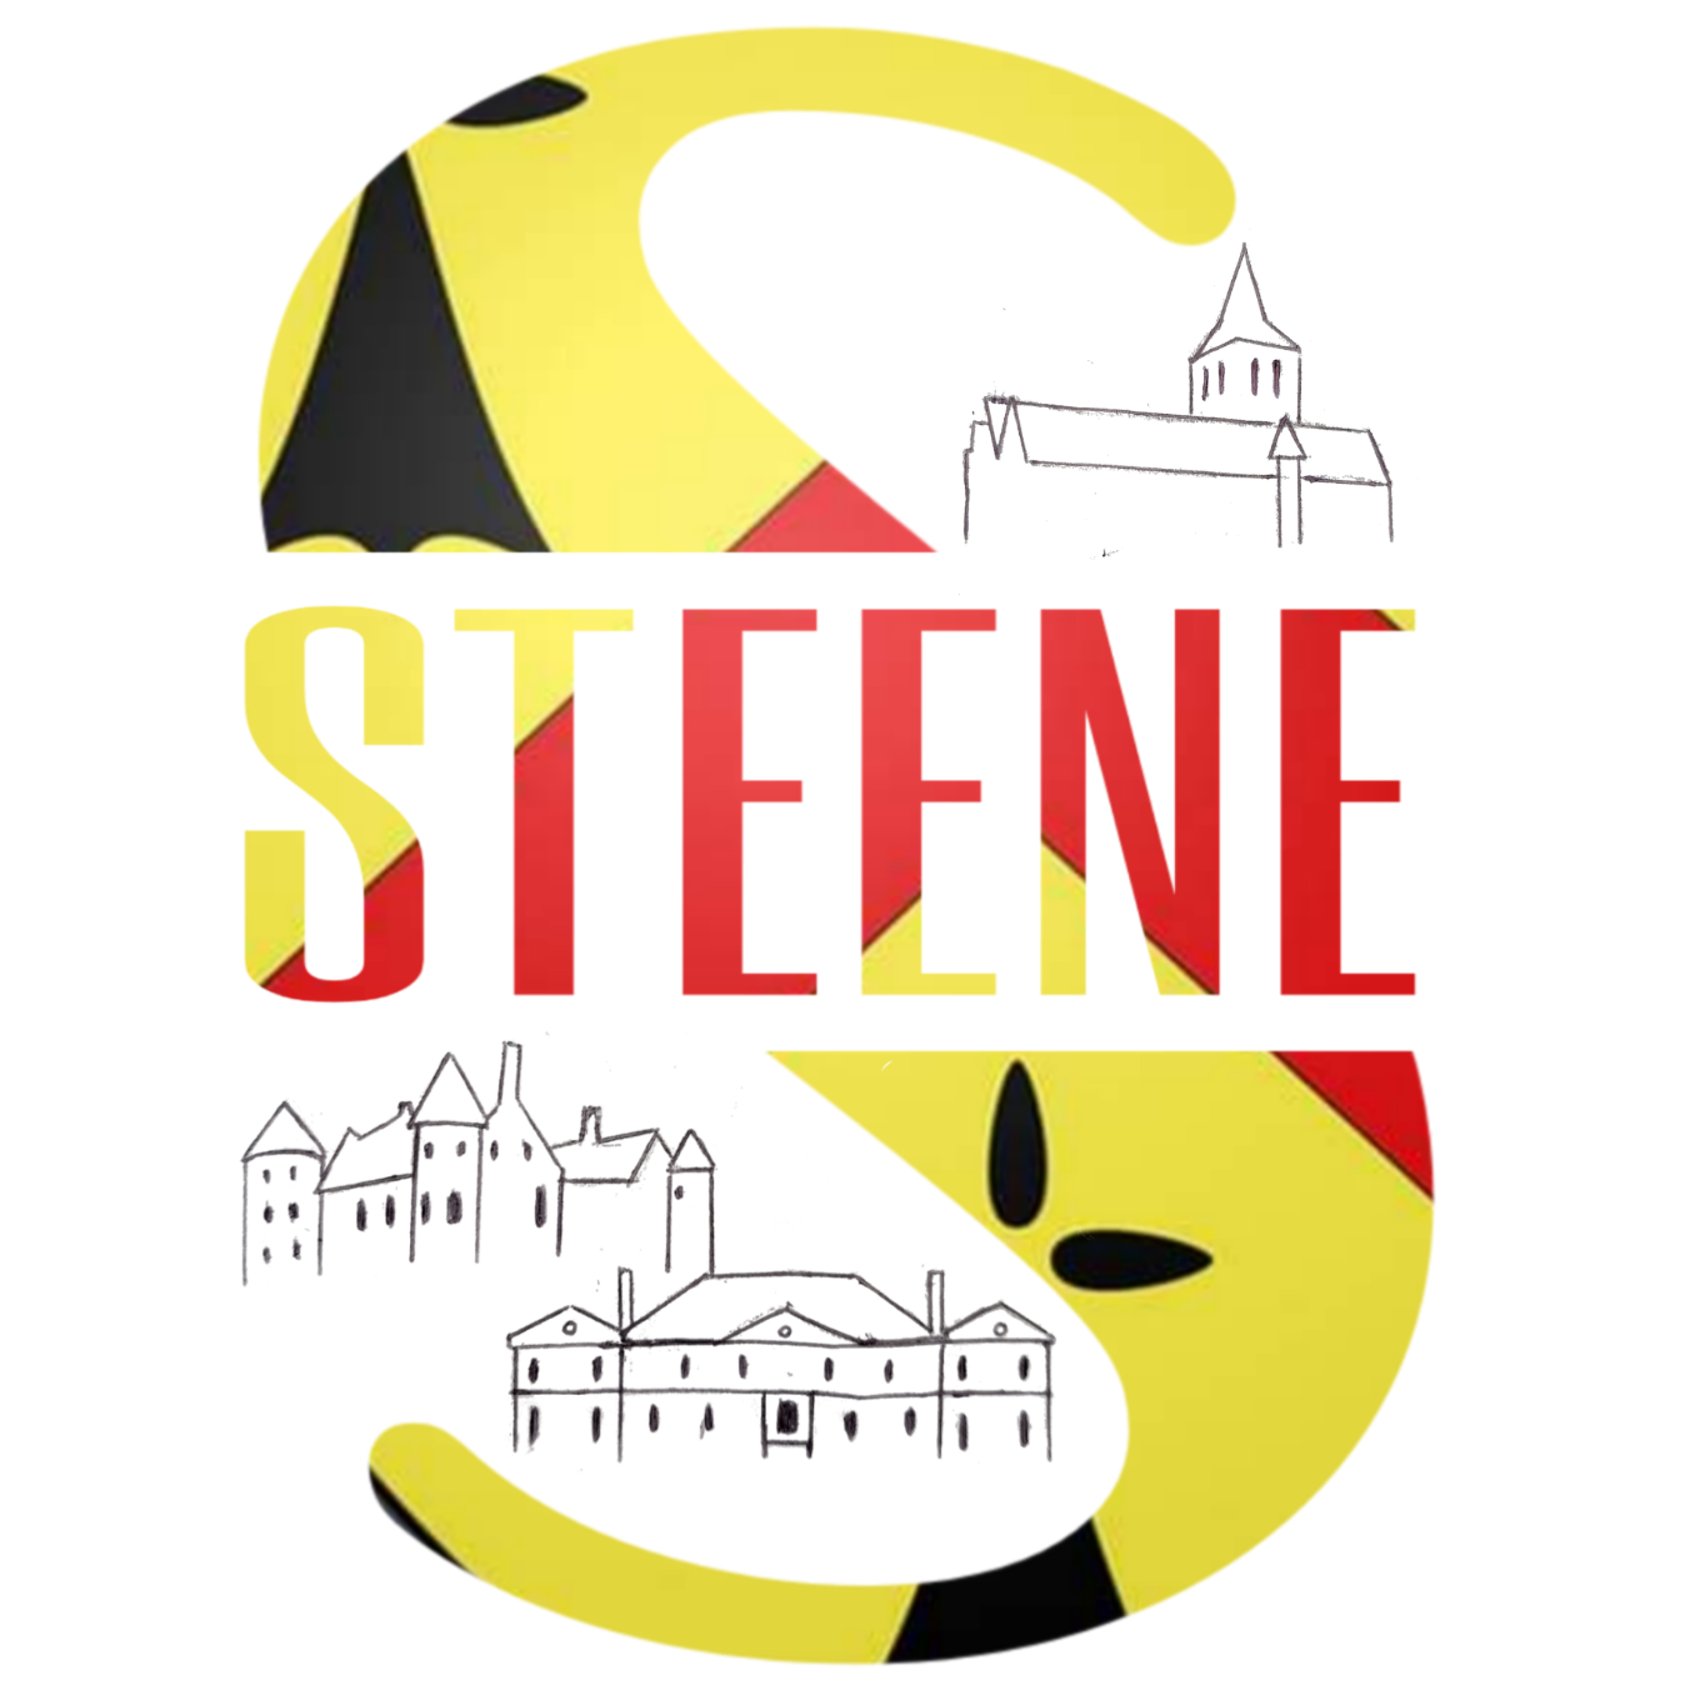 (c) Steene.fr